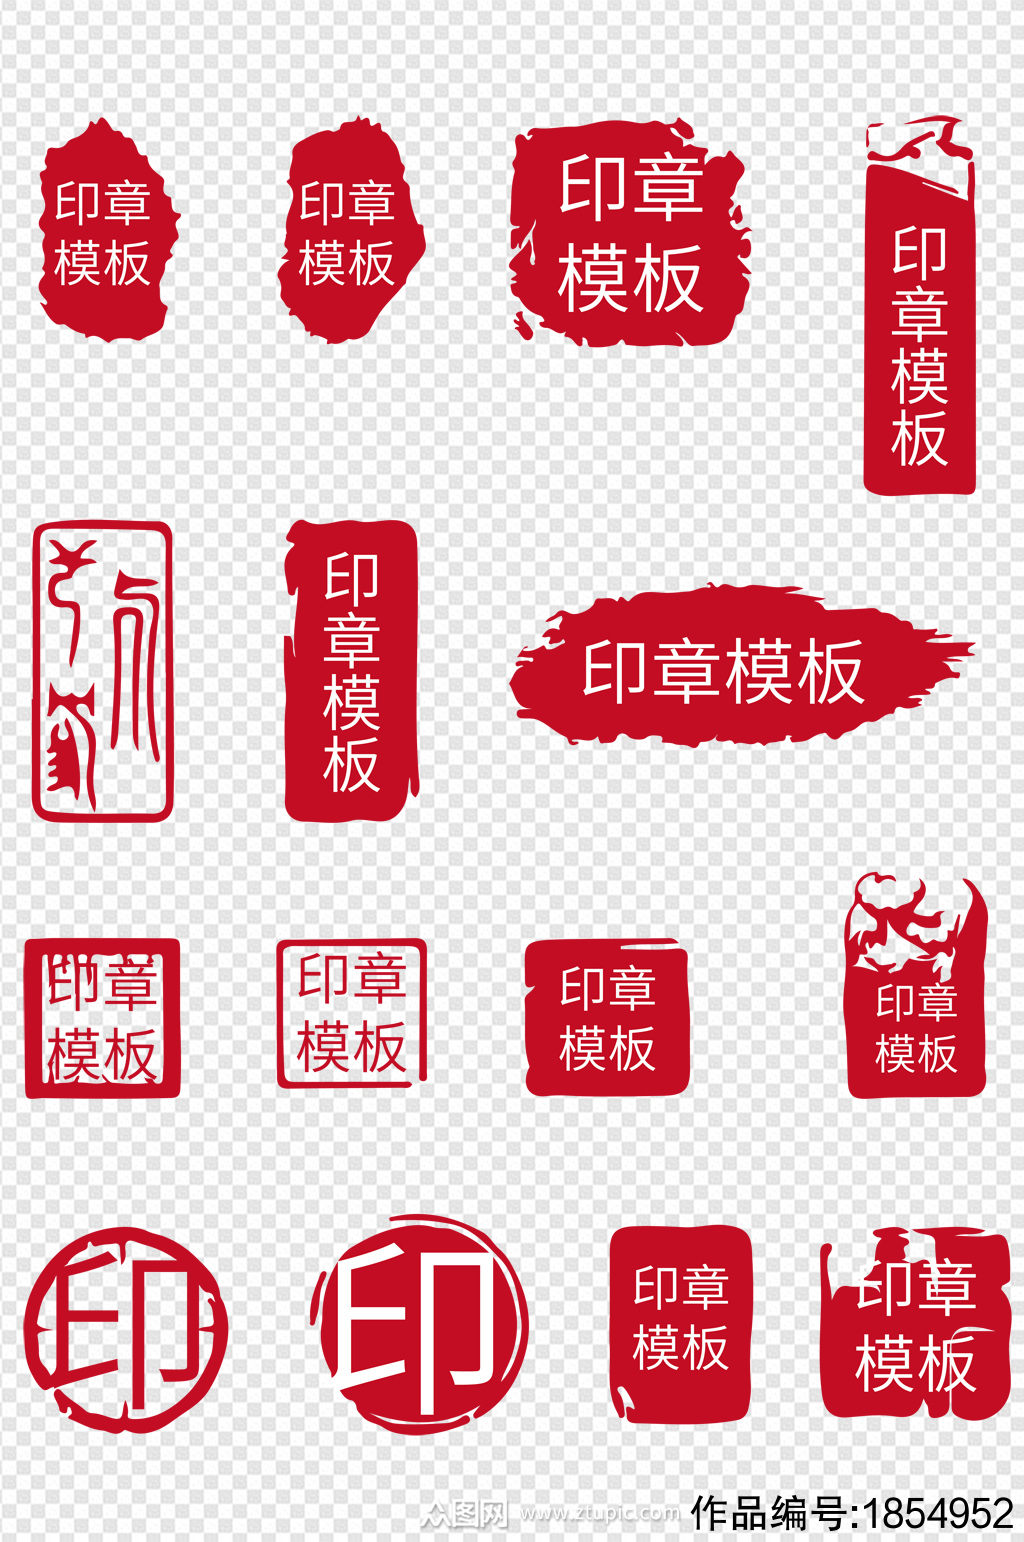 装饰传统中国风印章红印边框元素素材